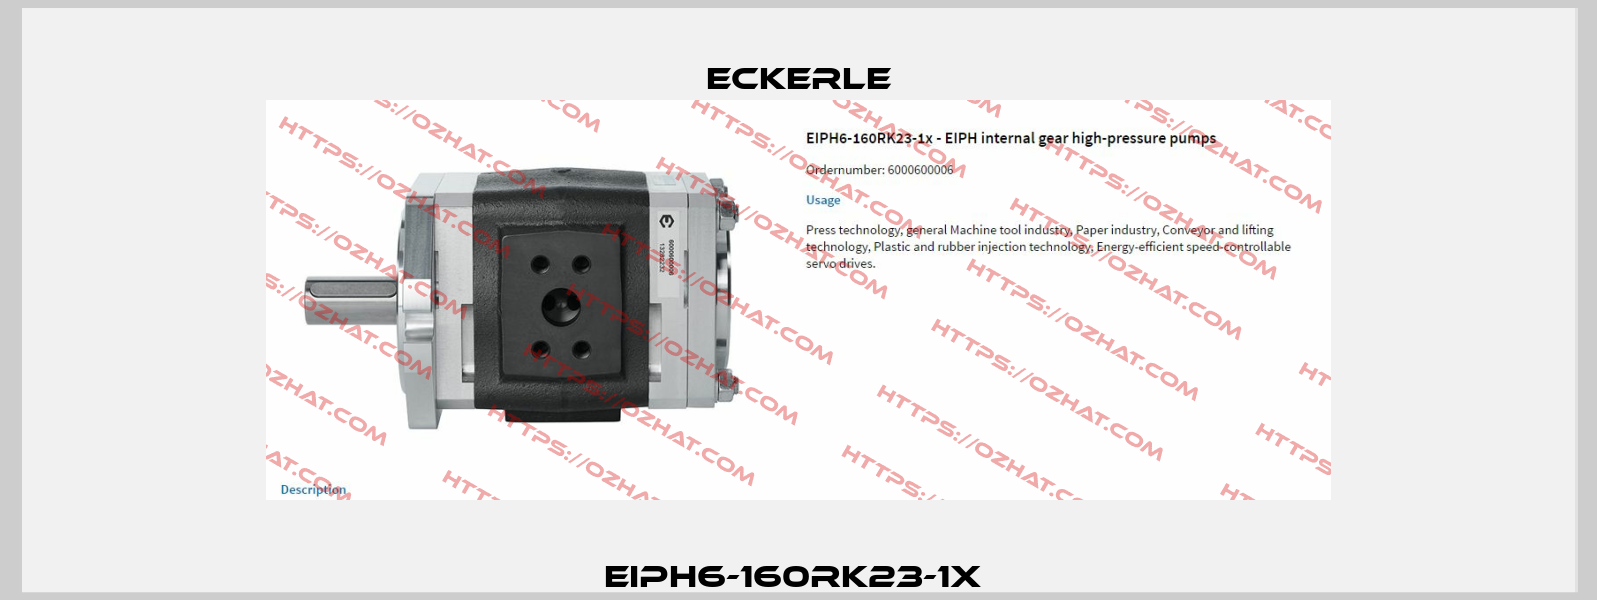 EIPH6-160RK23-1x  Eckerle